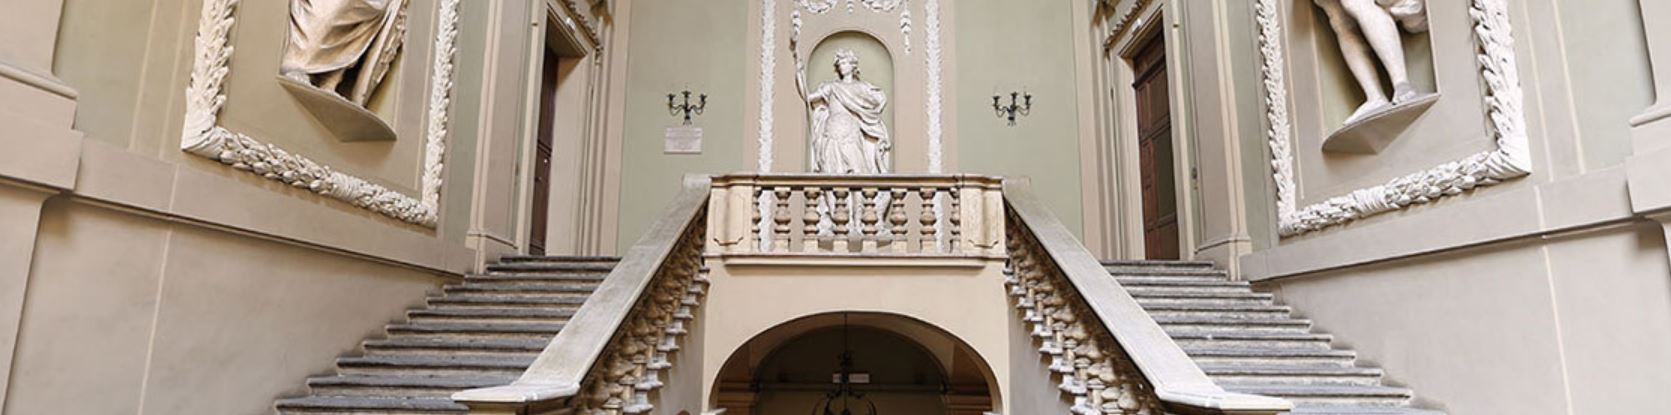 Set-Up si svolge nel Palazzo Pallavicini, in via San Felice 24, nel cuore della Bologna antica, a due passi dalle Due Torri e da Piazza Maggiore.